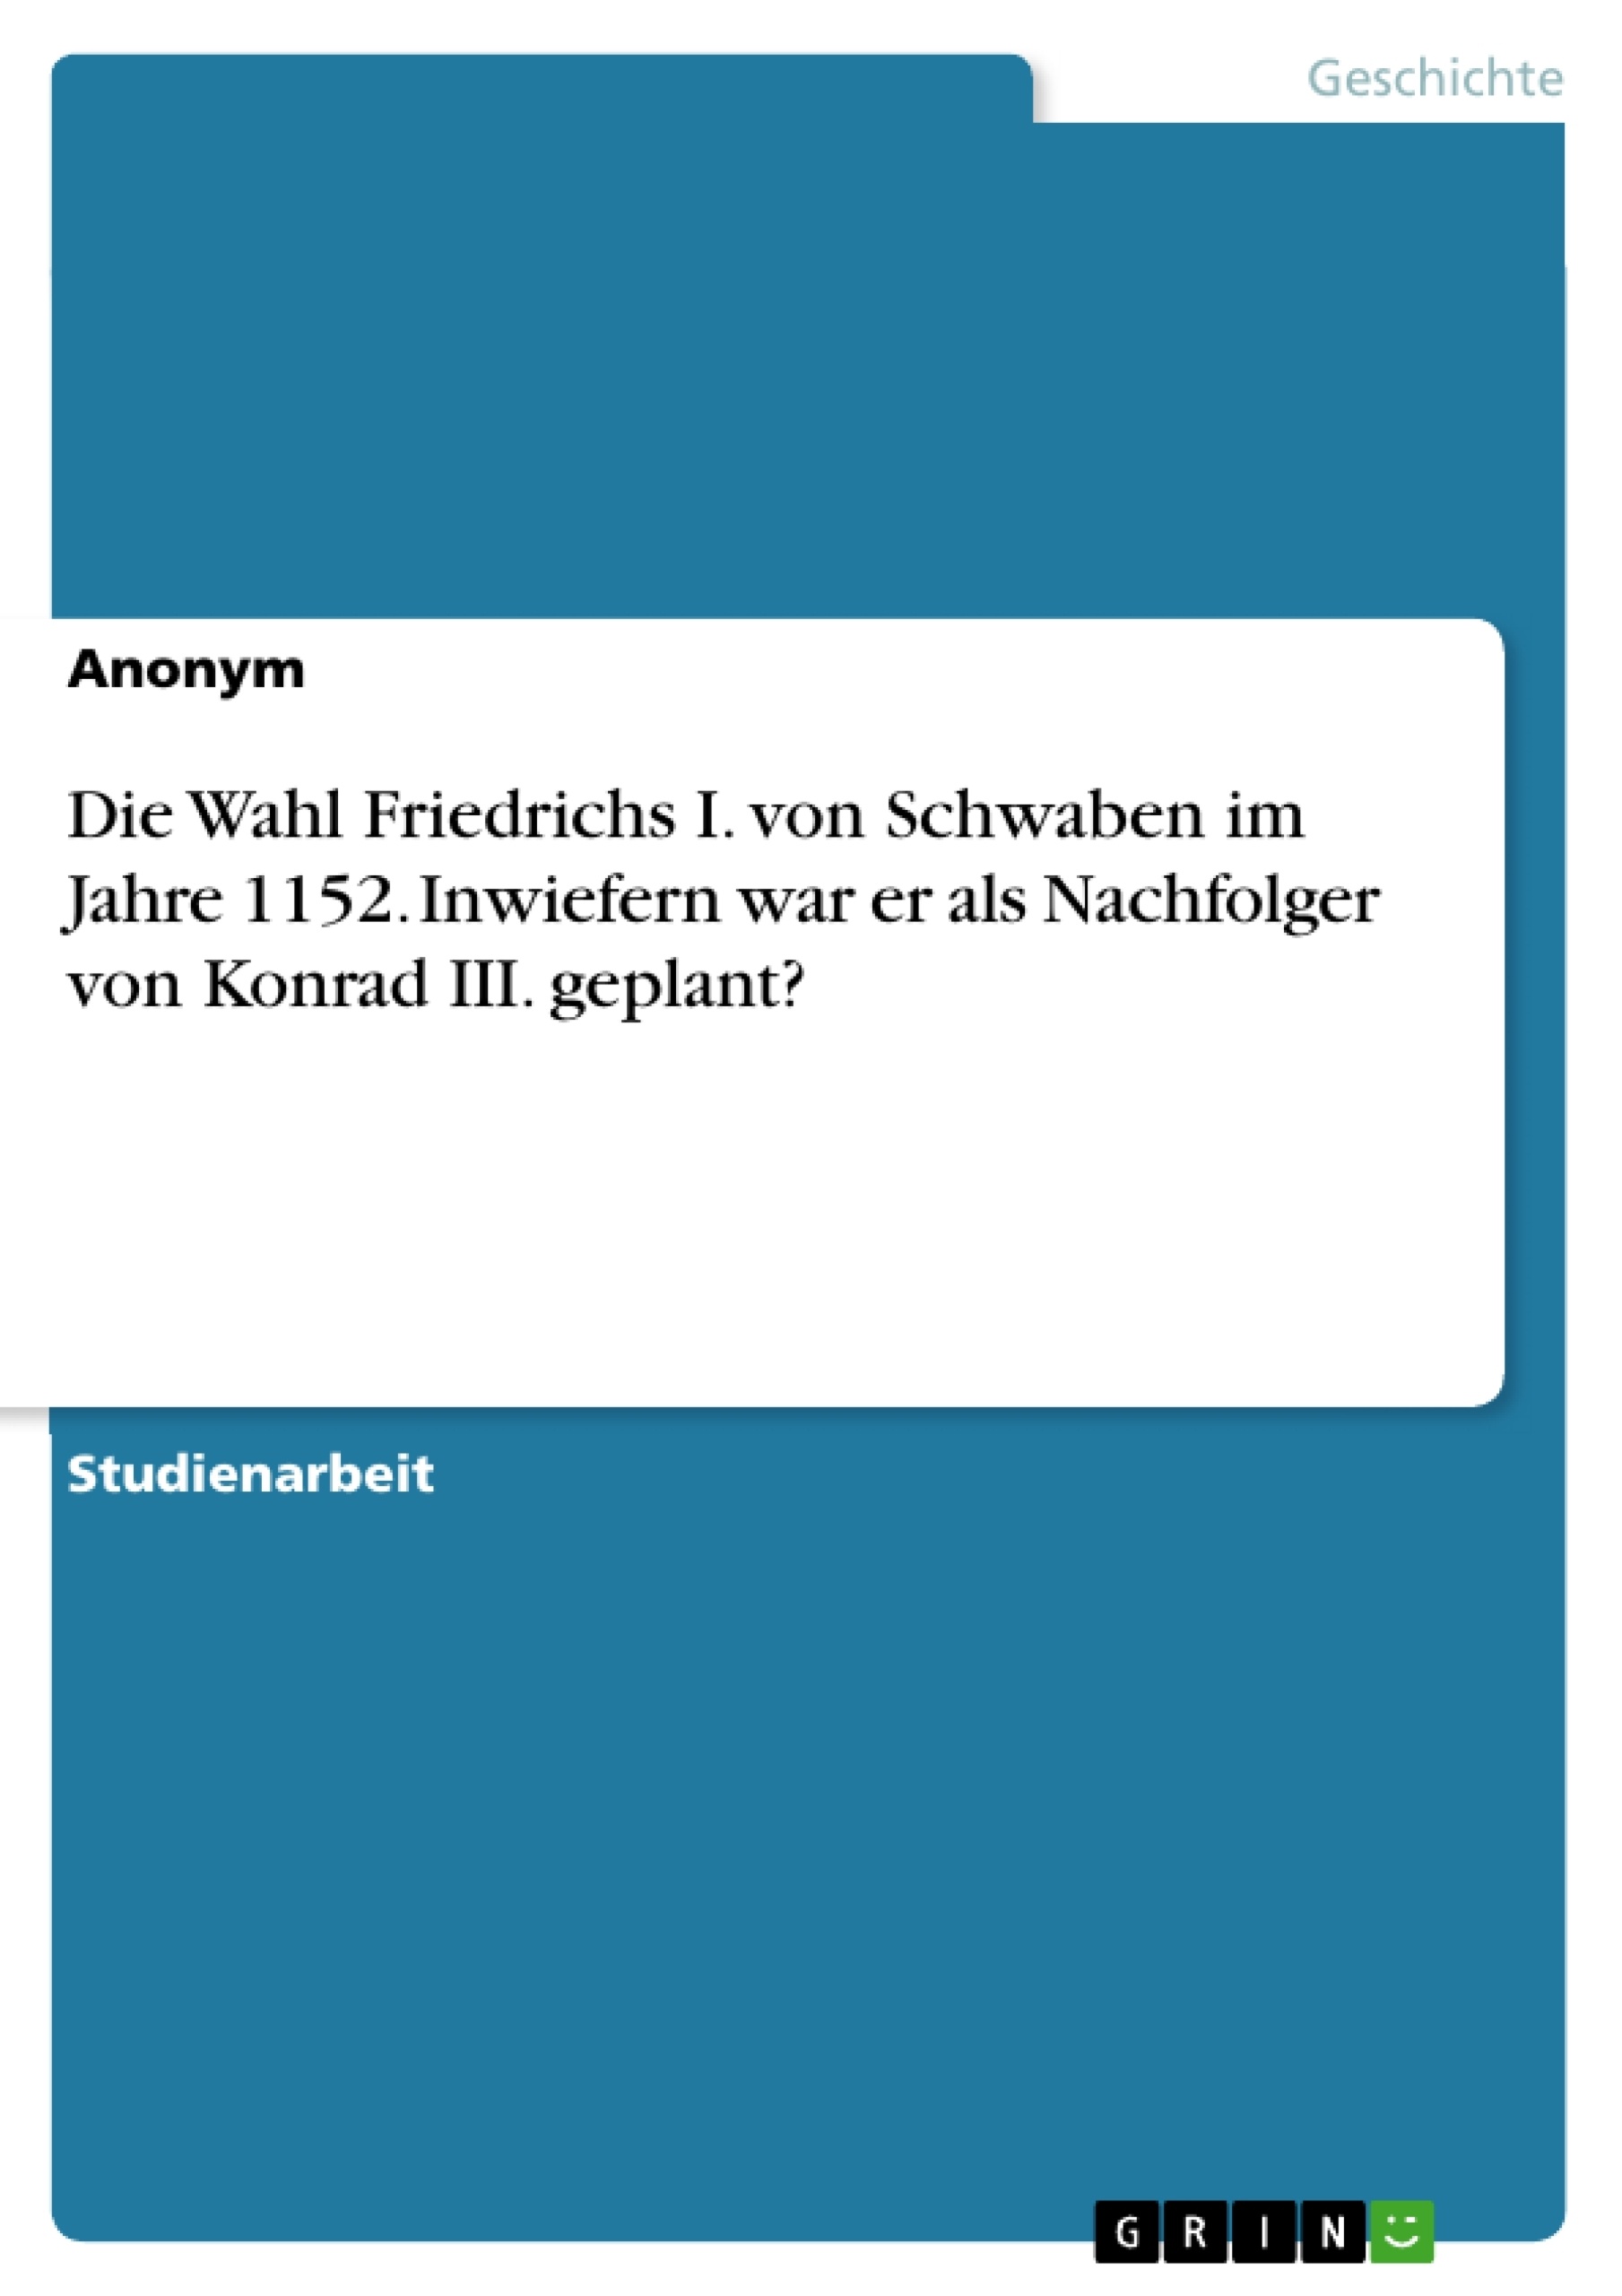 Título: Die Wahl Friedrichs I. von Schwaben im Jahre 1152. Inwiefern war er als Nachfolger von Konrad III. geplant?